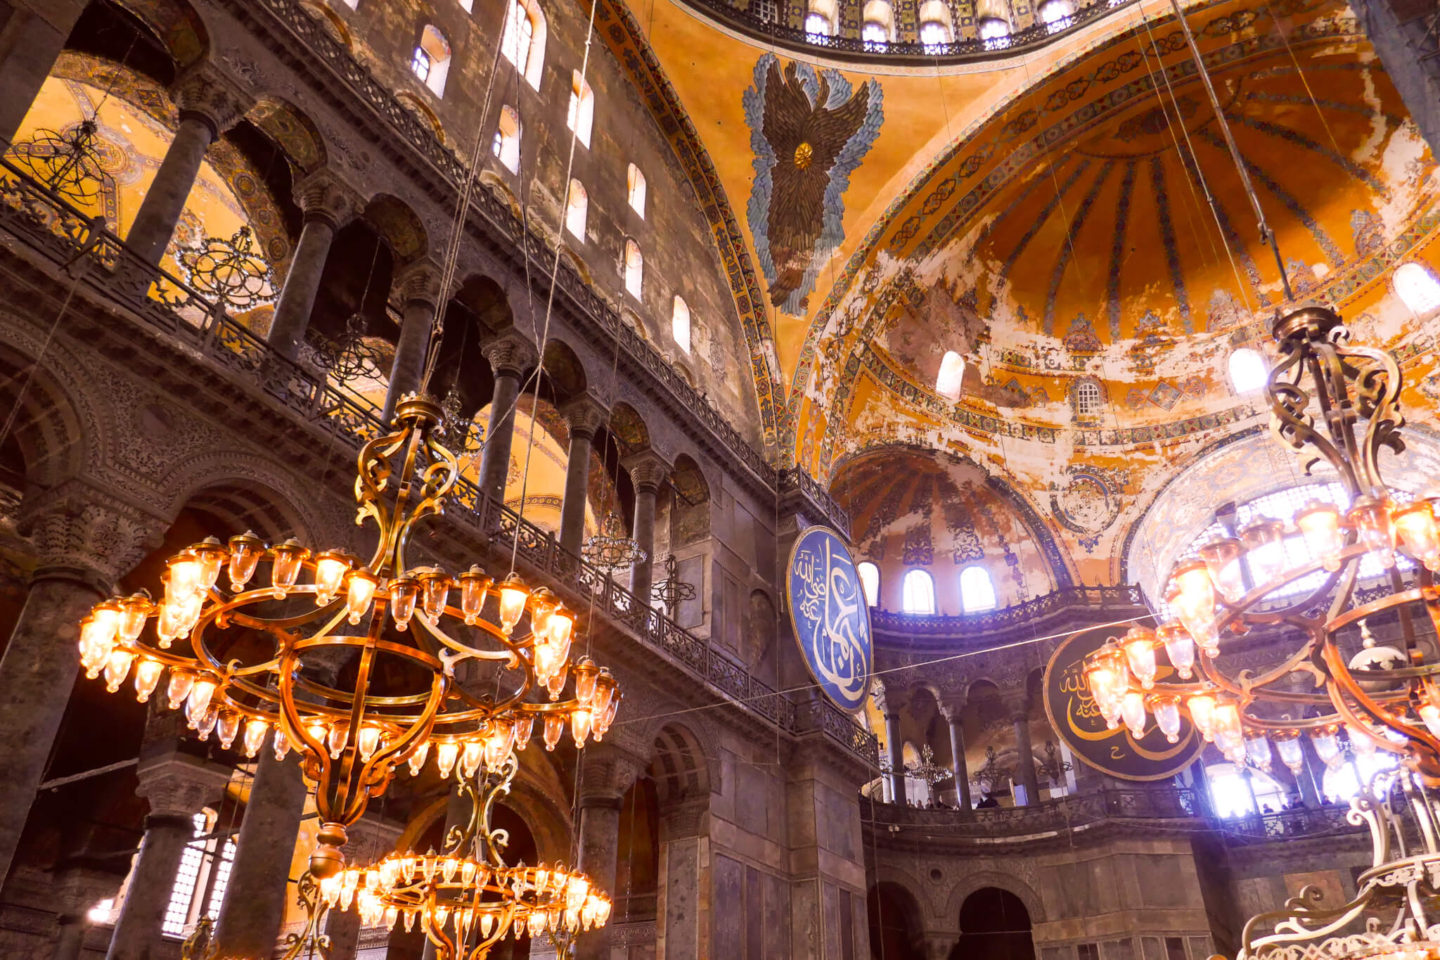 Interior of Hagia Sophia museum in Istanbul Turkey